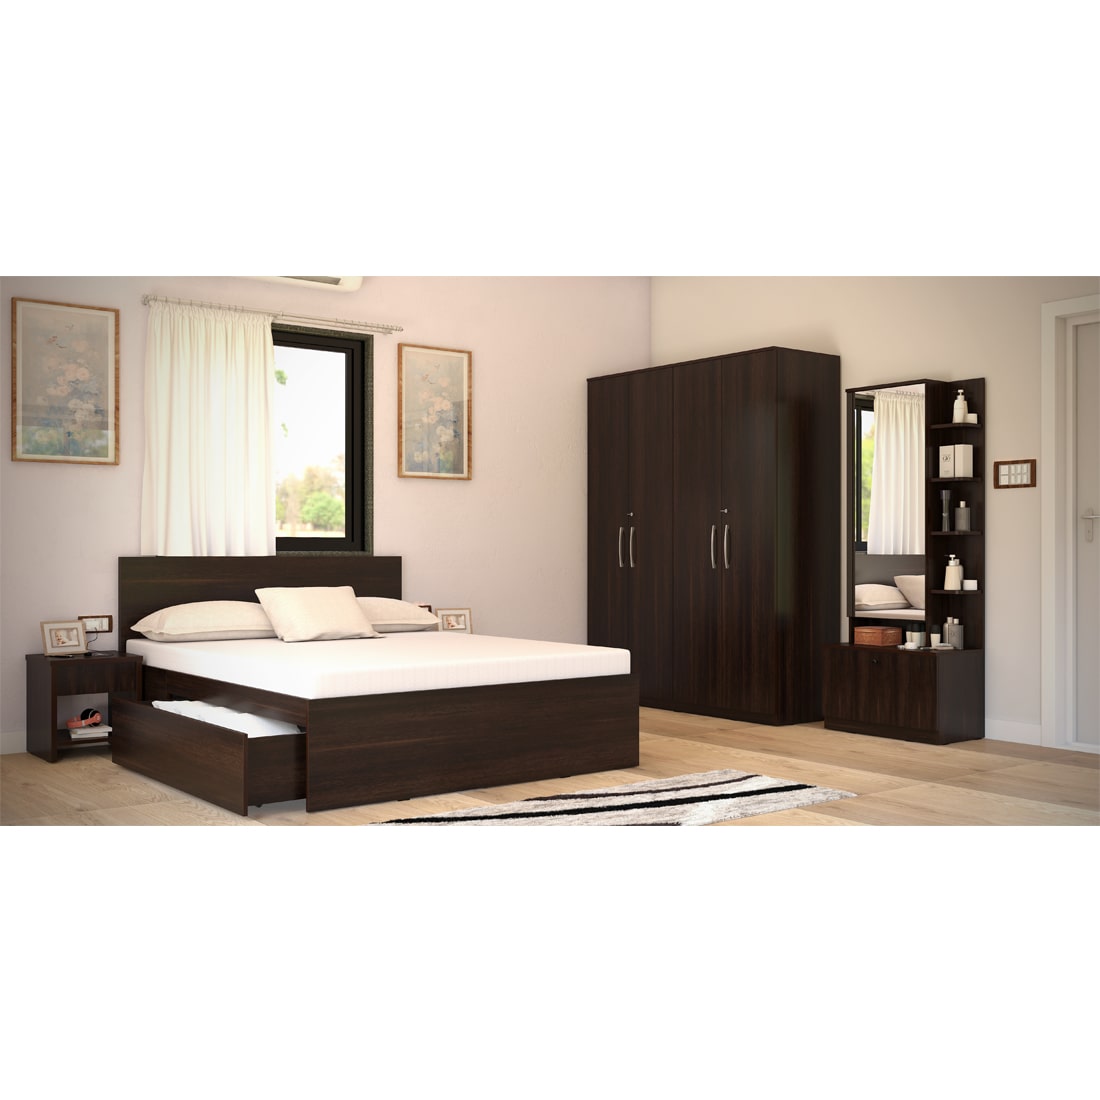 Modena 08: Set of 5 Bedroom Furniture - 4 door Wardrobe, Queen Bed  Left, Dresser and Side Tables